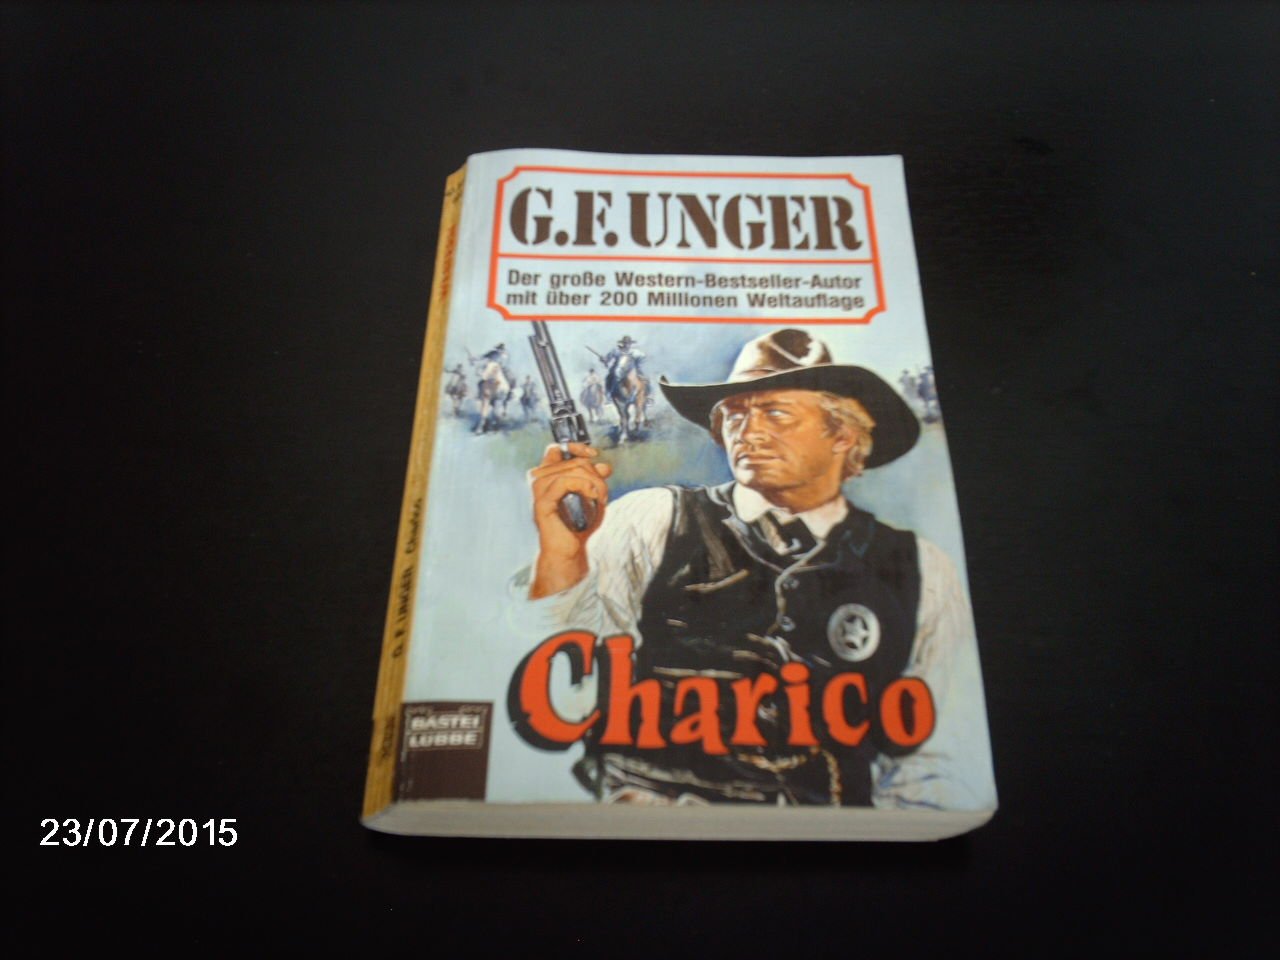 Charico“ (Unger, G. F) – Buch Erstausgabe kaufen – A02frdD501ZZg